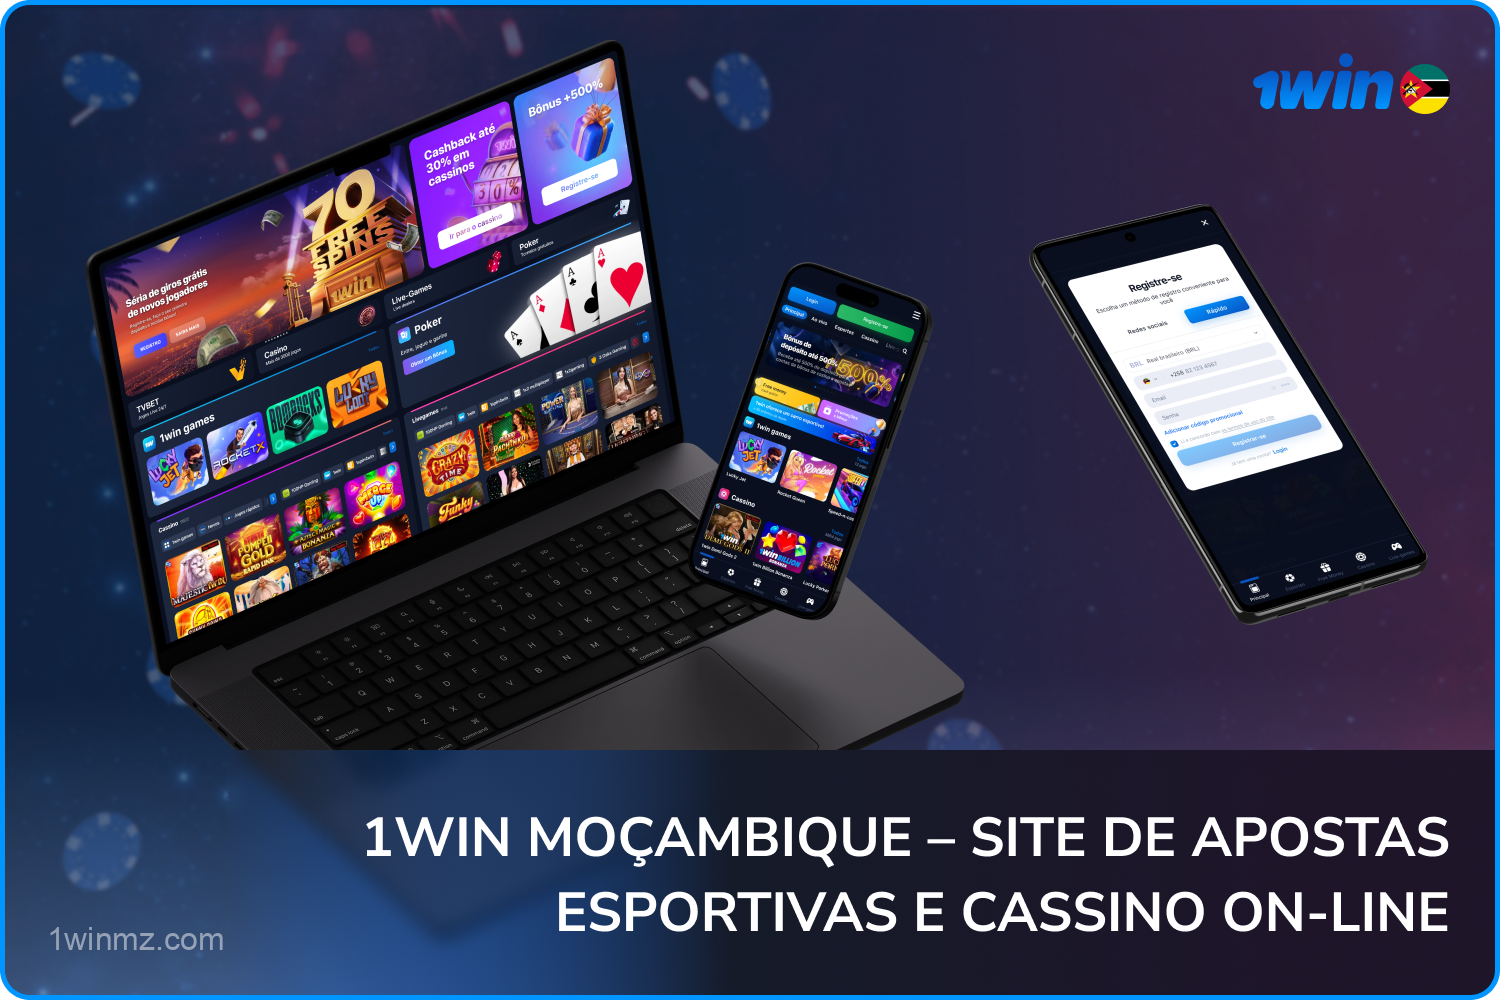 Os usuários de Moçambique podem apostar em esportes e jogar no cassino on-line 1win por meio do site e do aplicativo móvel